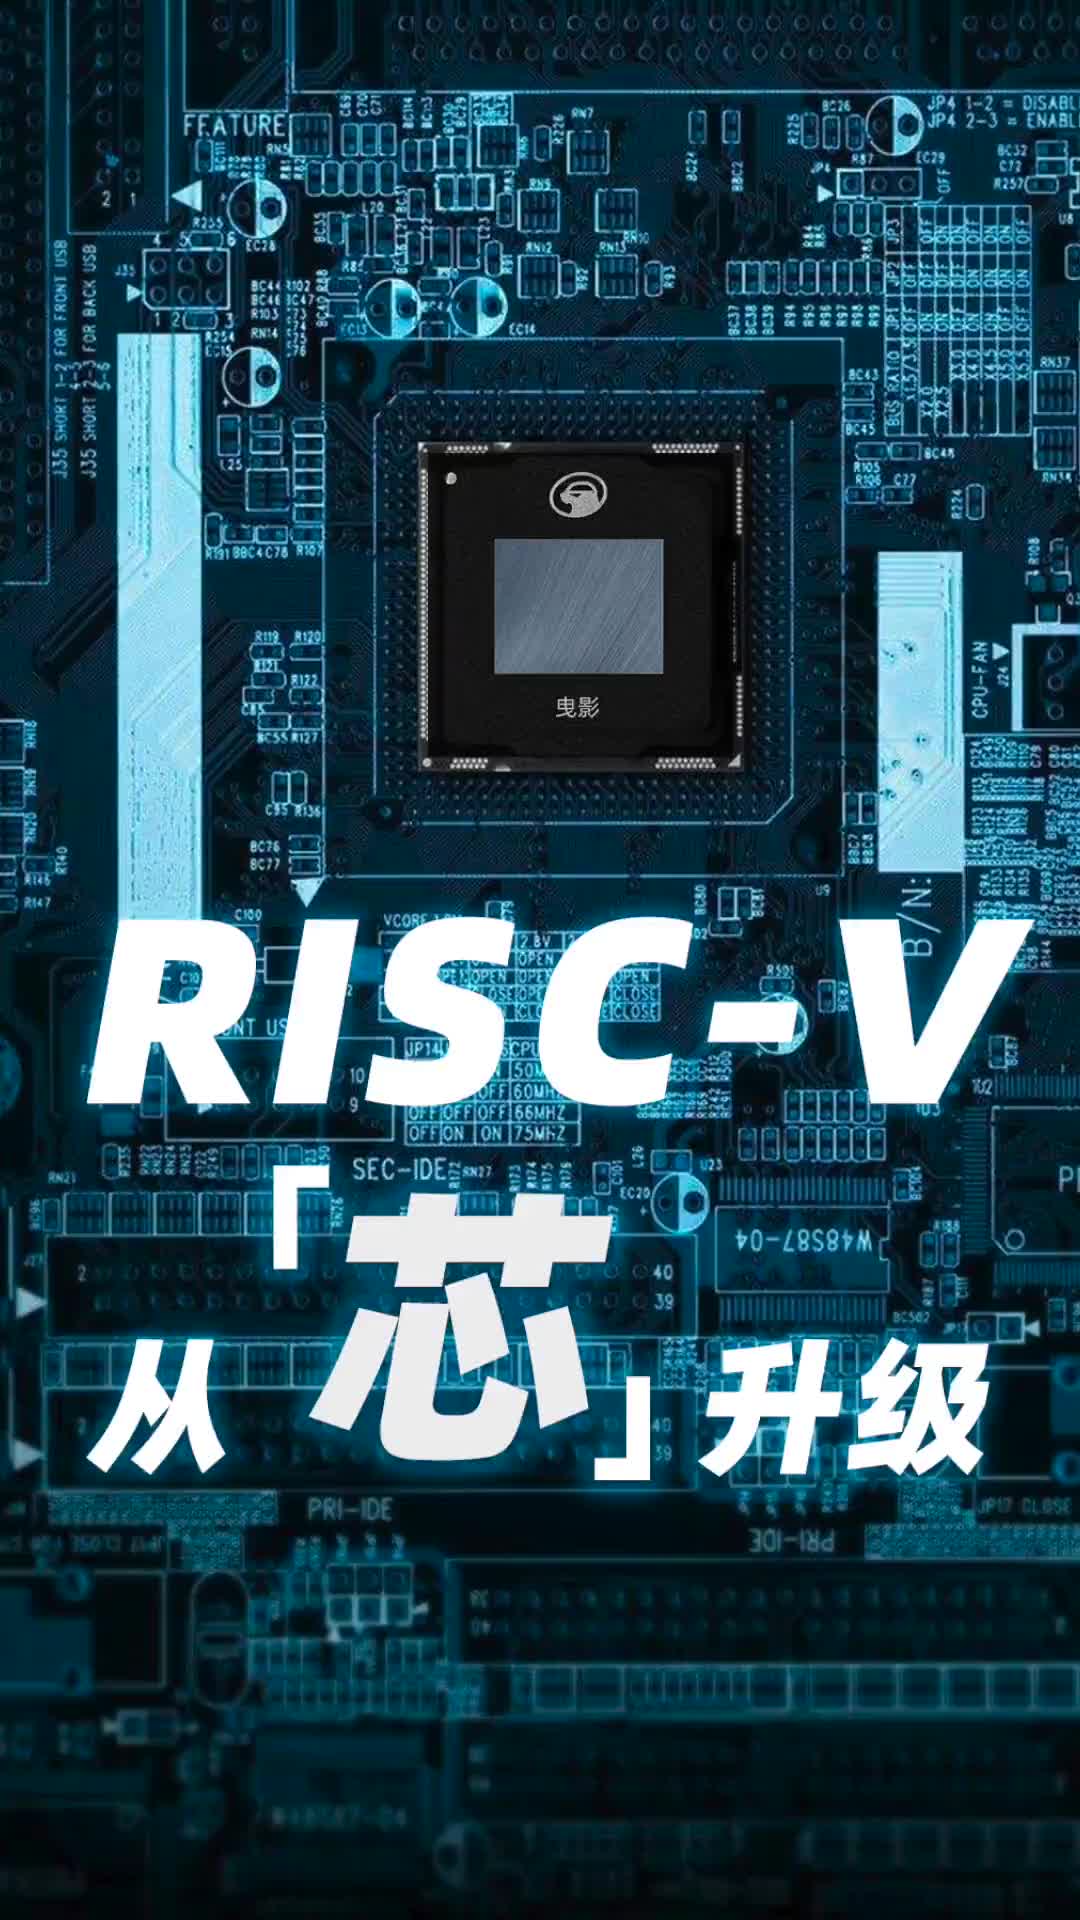 阿里平头哥发布首个高性能RISC-V芯片设计平台